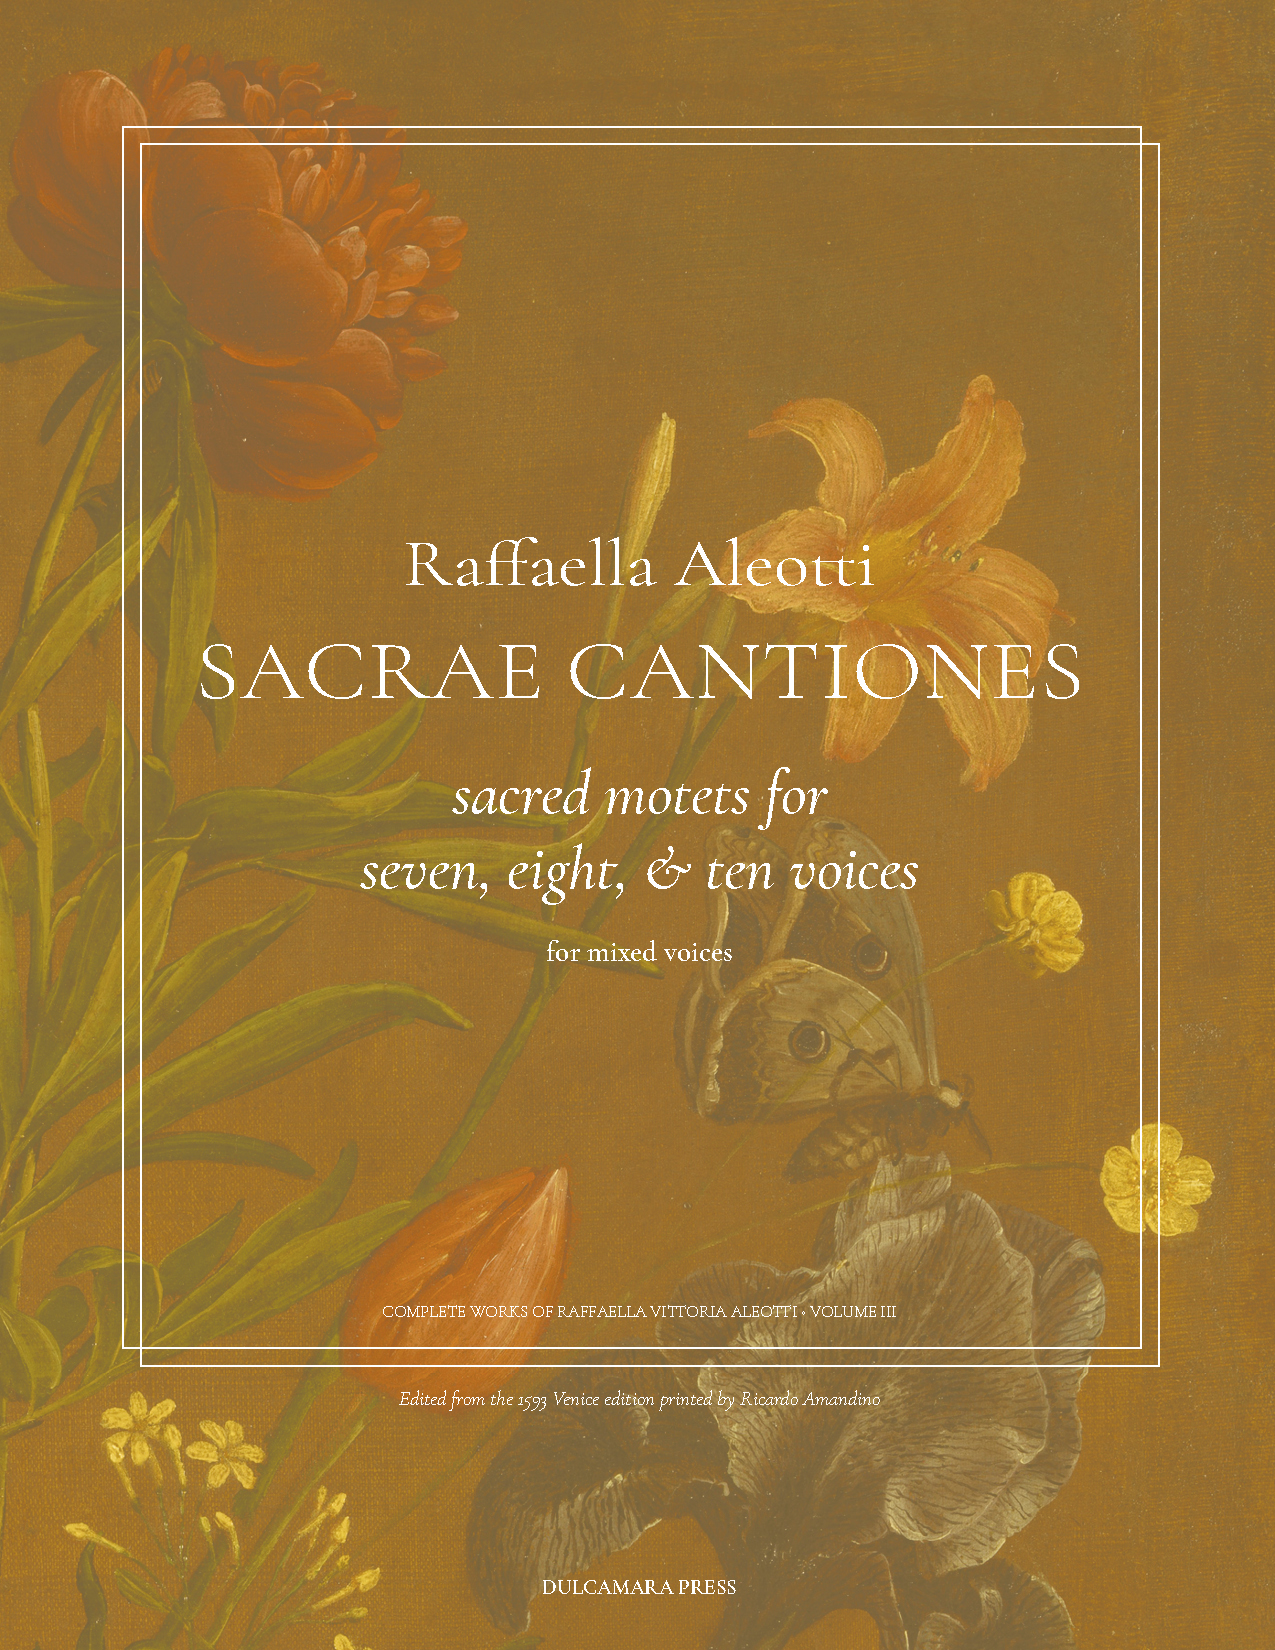 cover image for Raffaella Aleotti Sacrae Cantiones, volume 3.